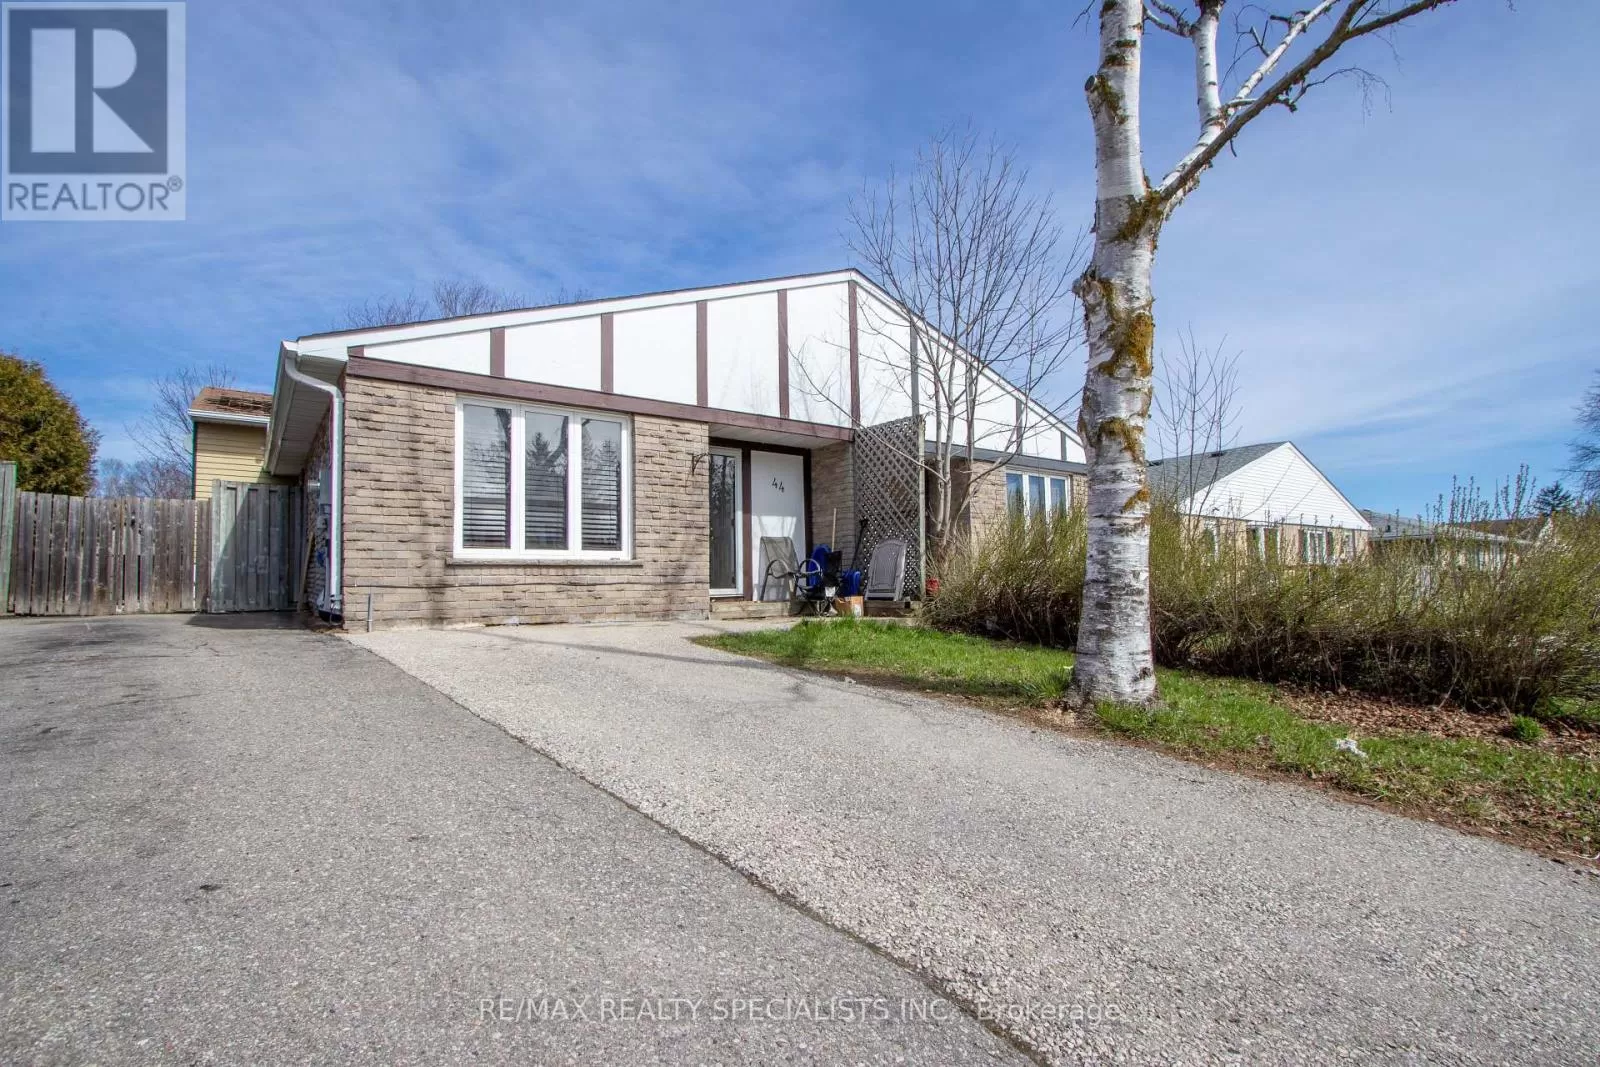 House for rent: (upper) - 44 Manor Crescent, Orangeville, Ontario L9W 3P7